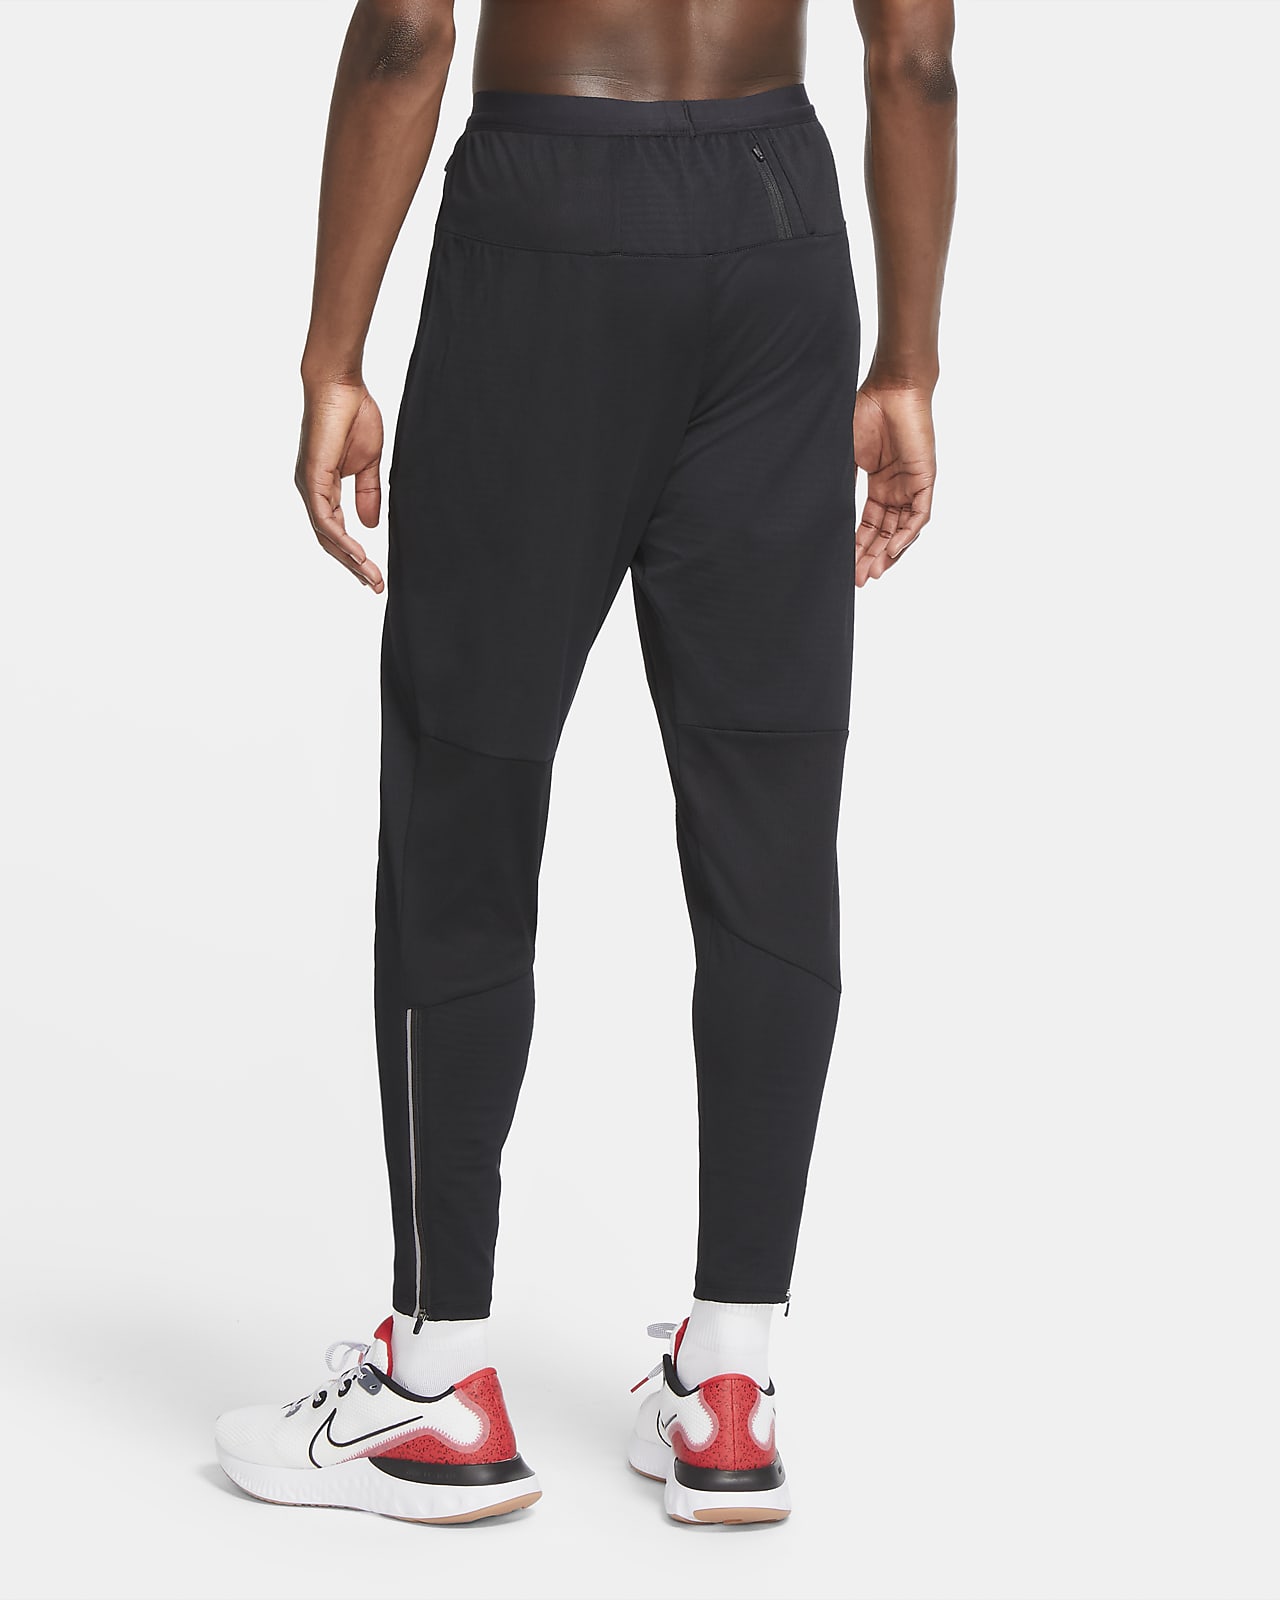 Pantalones Running Nike